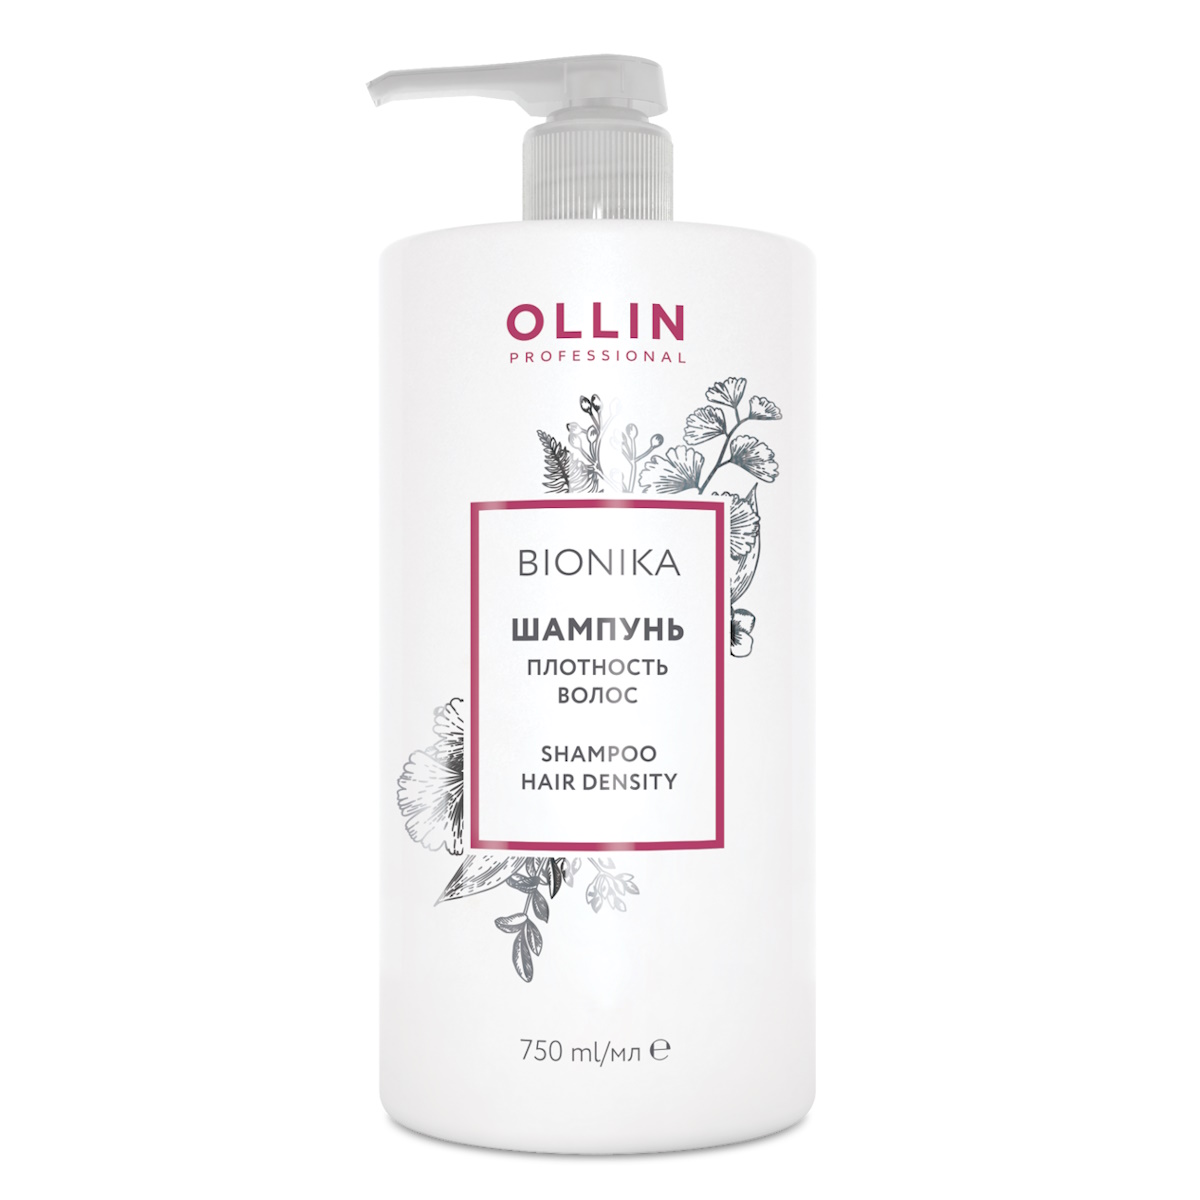 Шампунь Ollin Professional BioNika Плотность волос 750 мл бинт медицинский стерильный емельян савостин плотность 32 г квм ту 14 х 700 см 2 шт